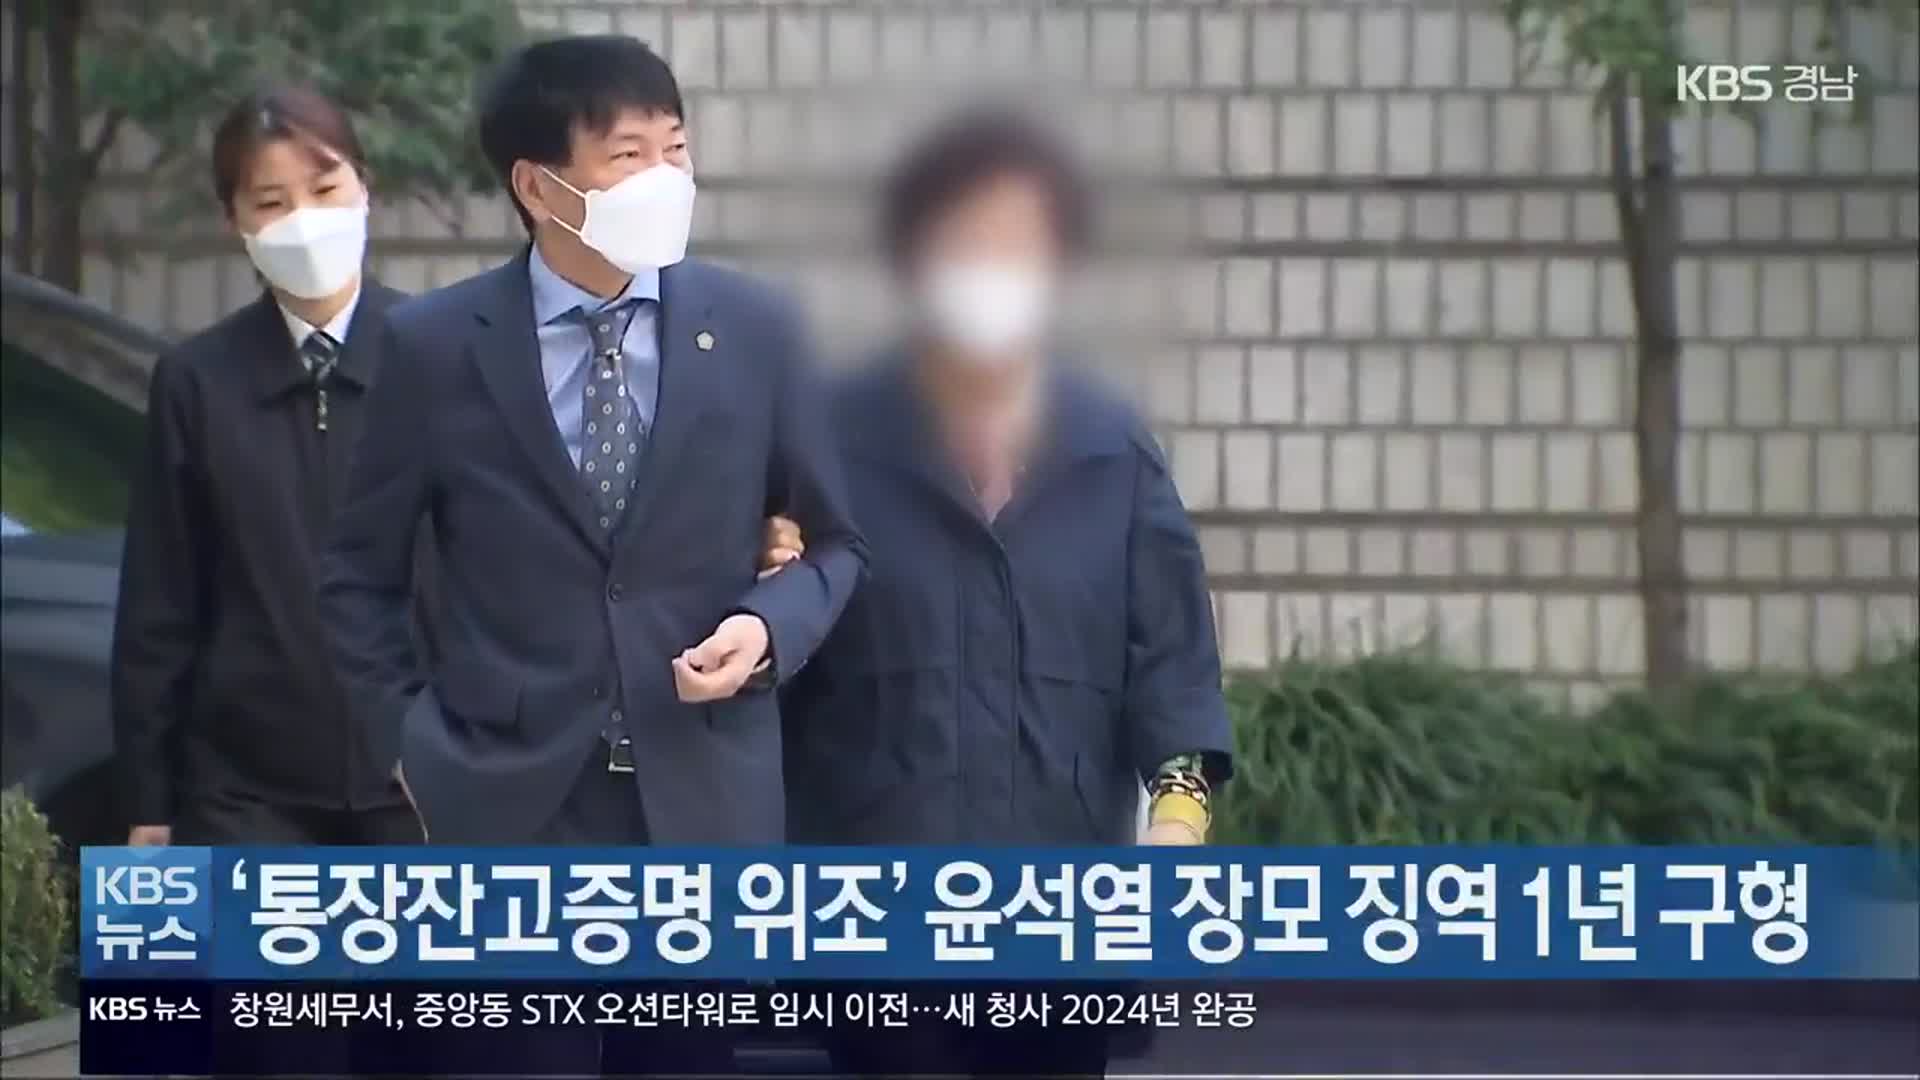 ‘통장잔고증명 위조’ 윤석열 장모 징역 1년 구형